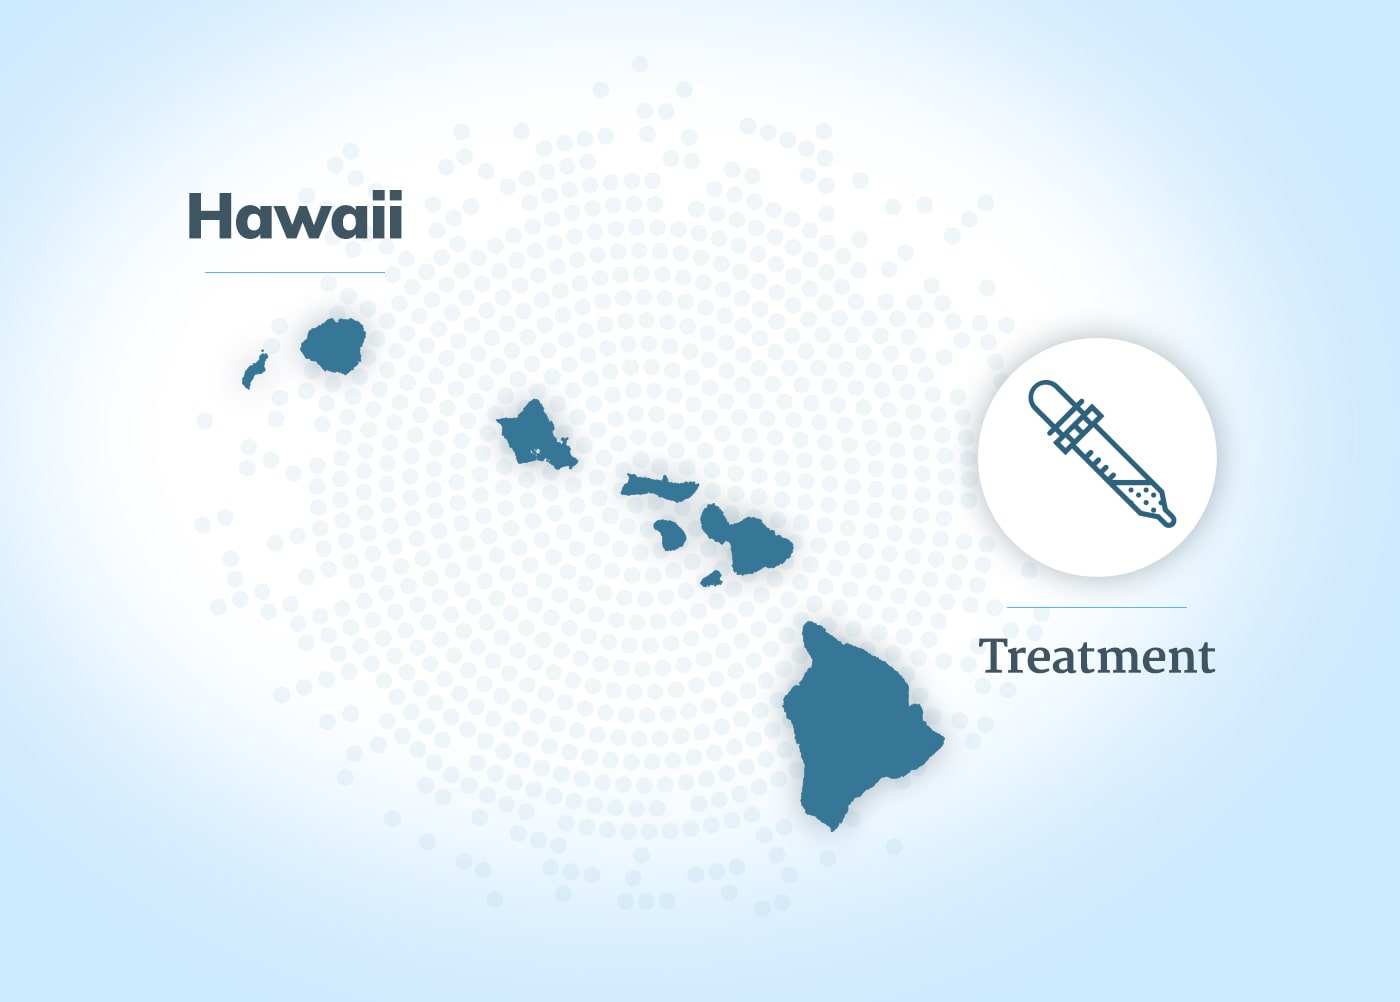 万博专业版夏威夷的间皮瘤治疗